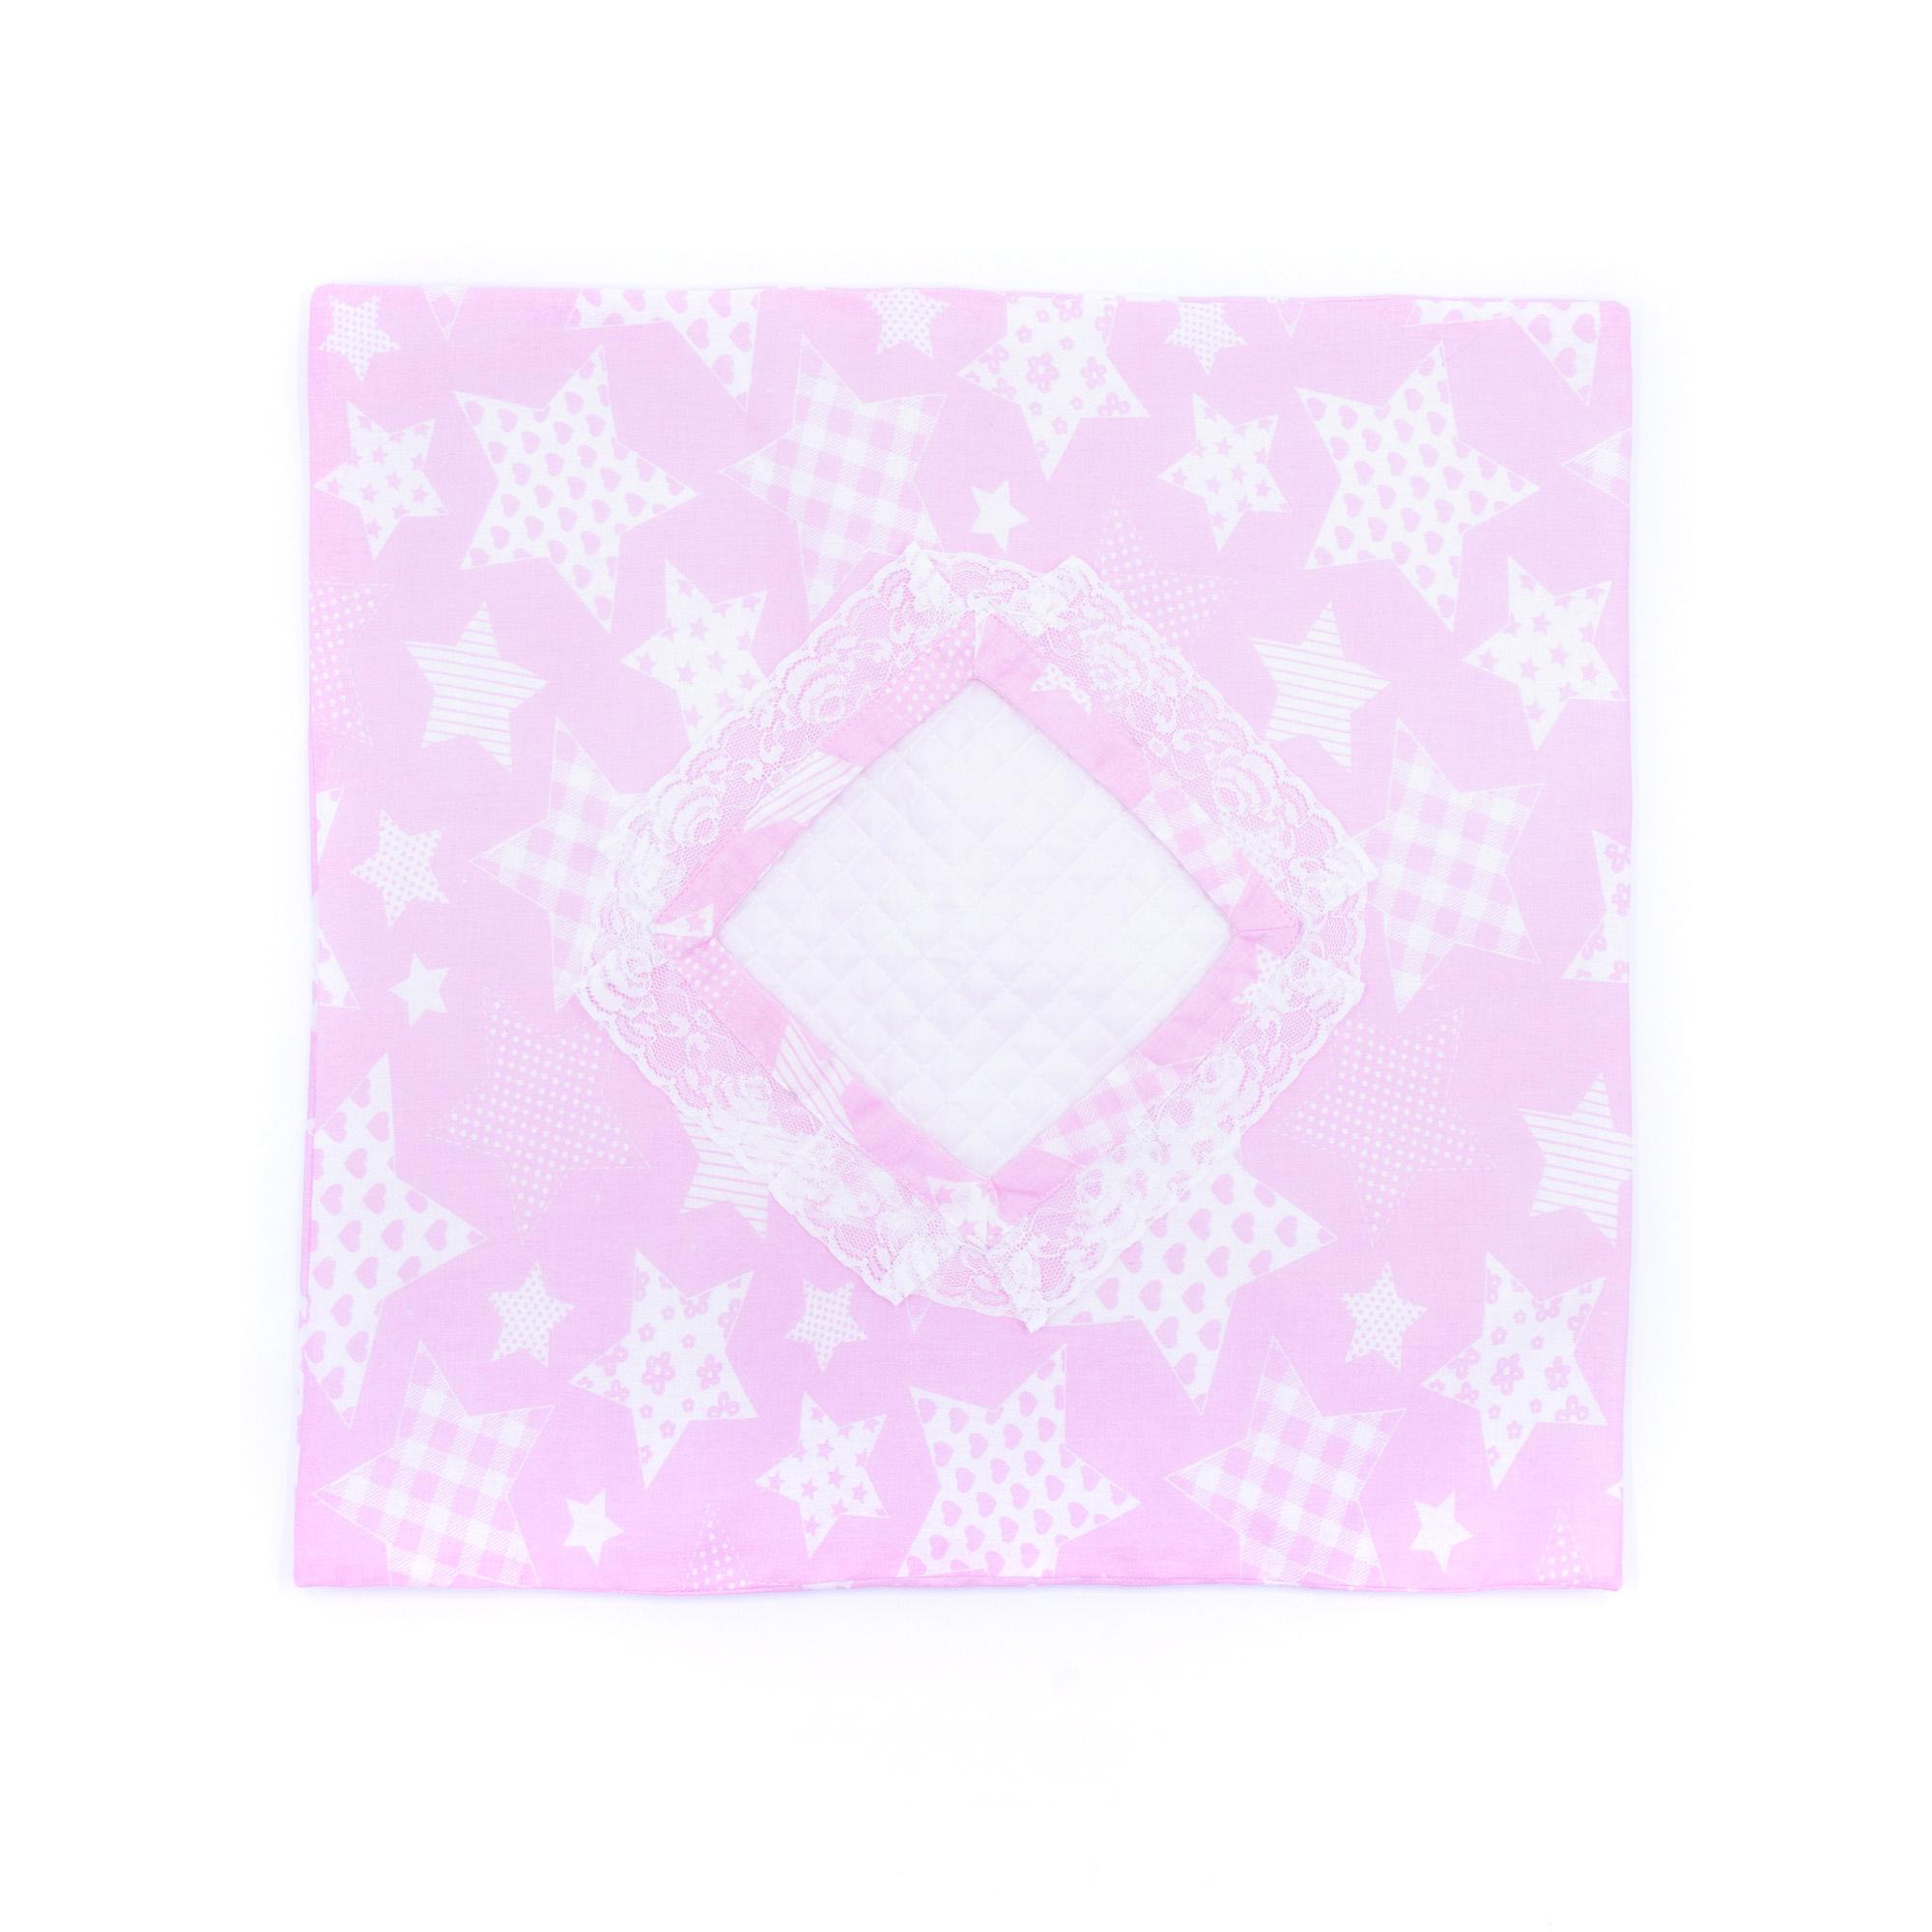 Спальный комплект Модница для пупса 43-48 см 6109 бледно-розовый 6109бледно-розовый - фото 4